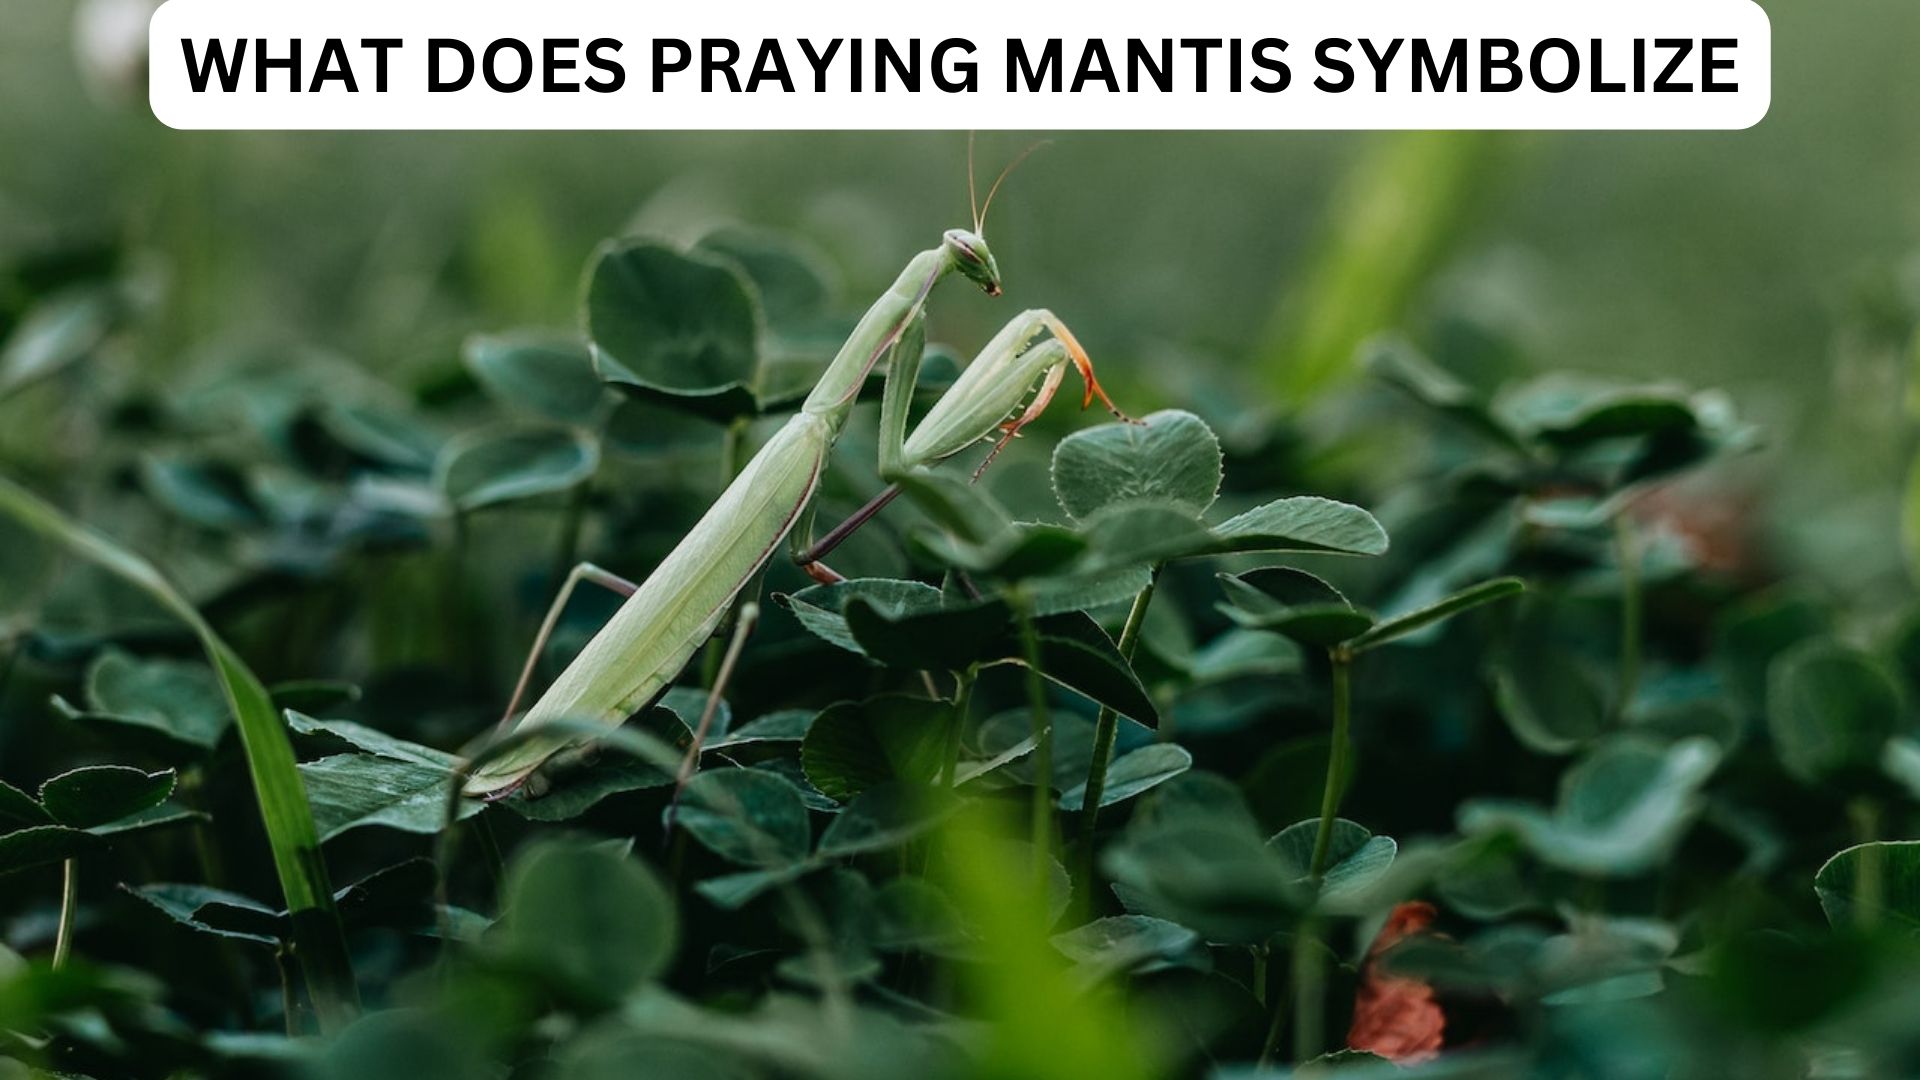 What Does Praying Mantis Symbolize?